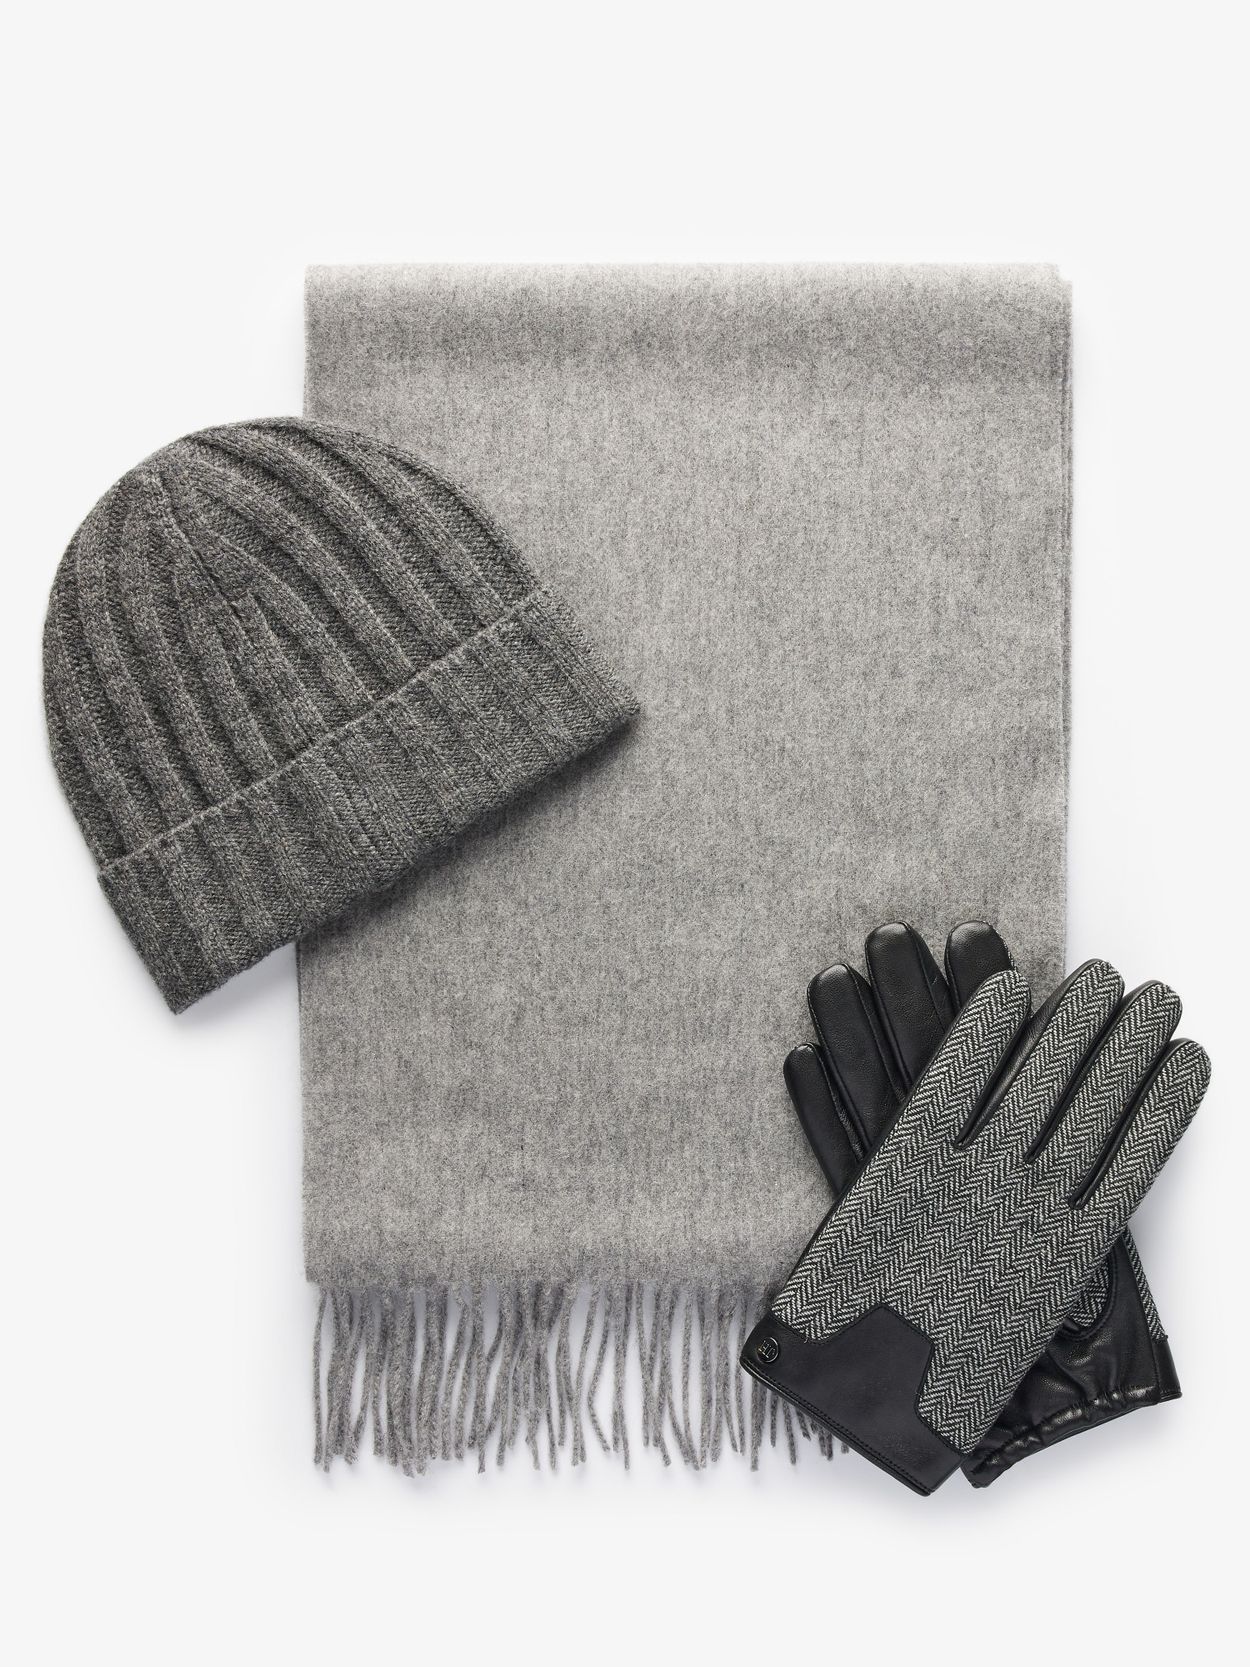 Mütze, Schal und Handschuhe aus grauer Wolle